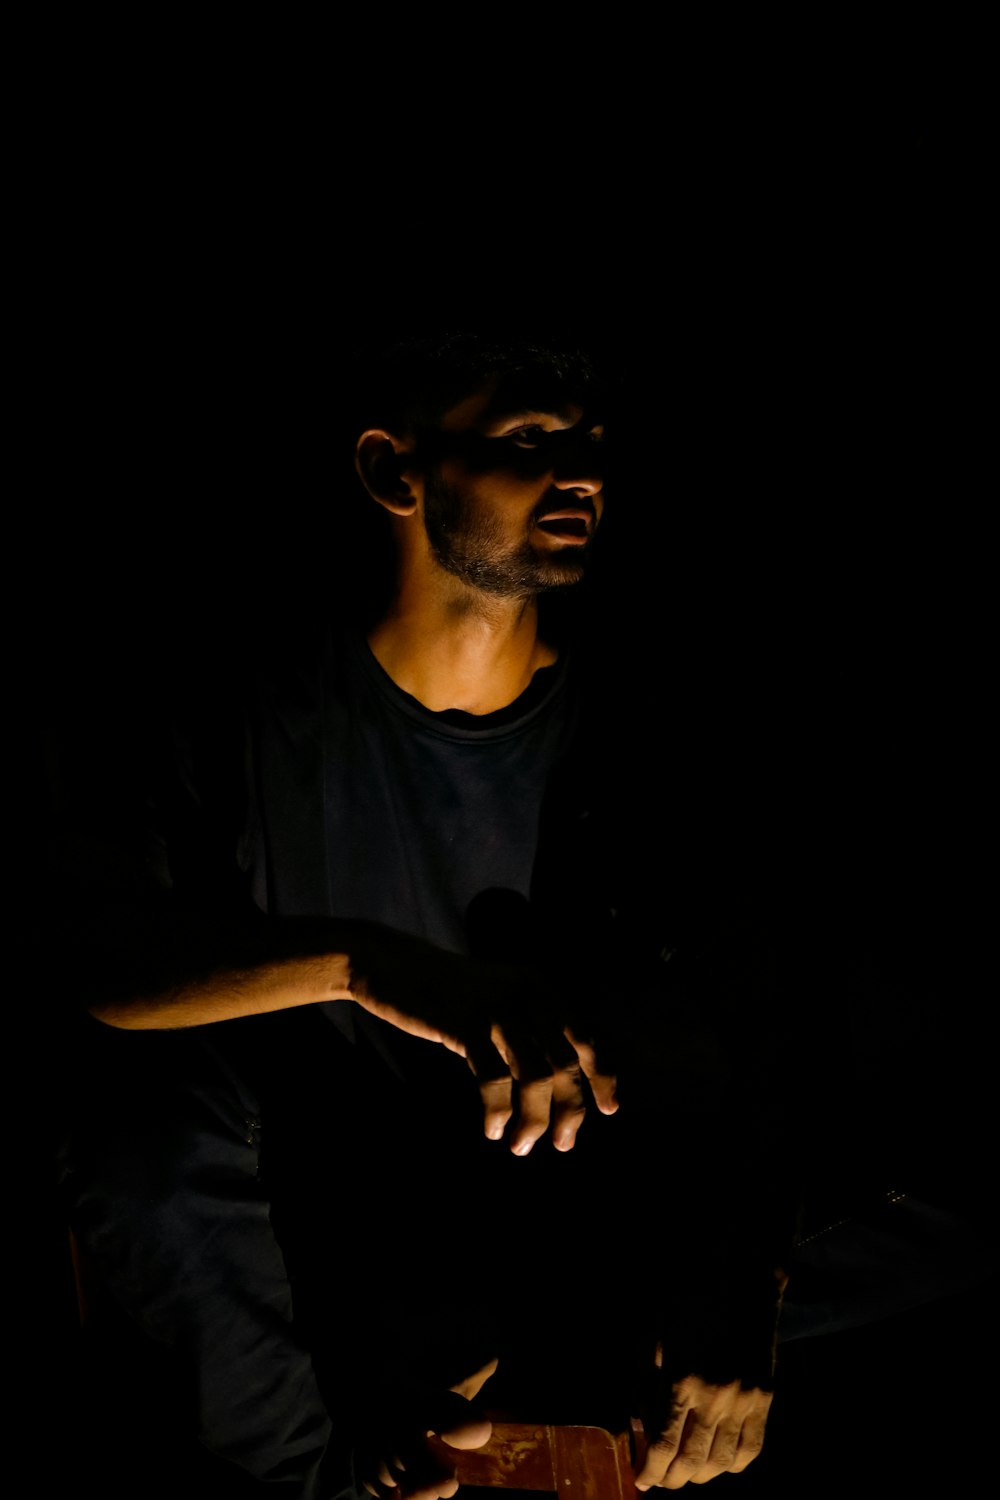 Un hombre sentado en la oscuridad sosteniendo un teléfono celular